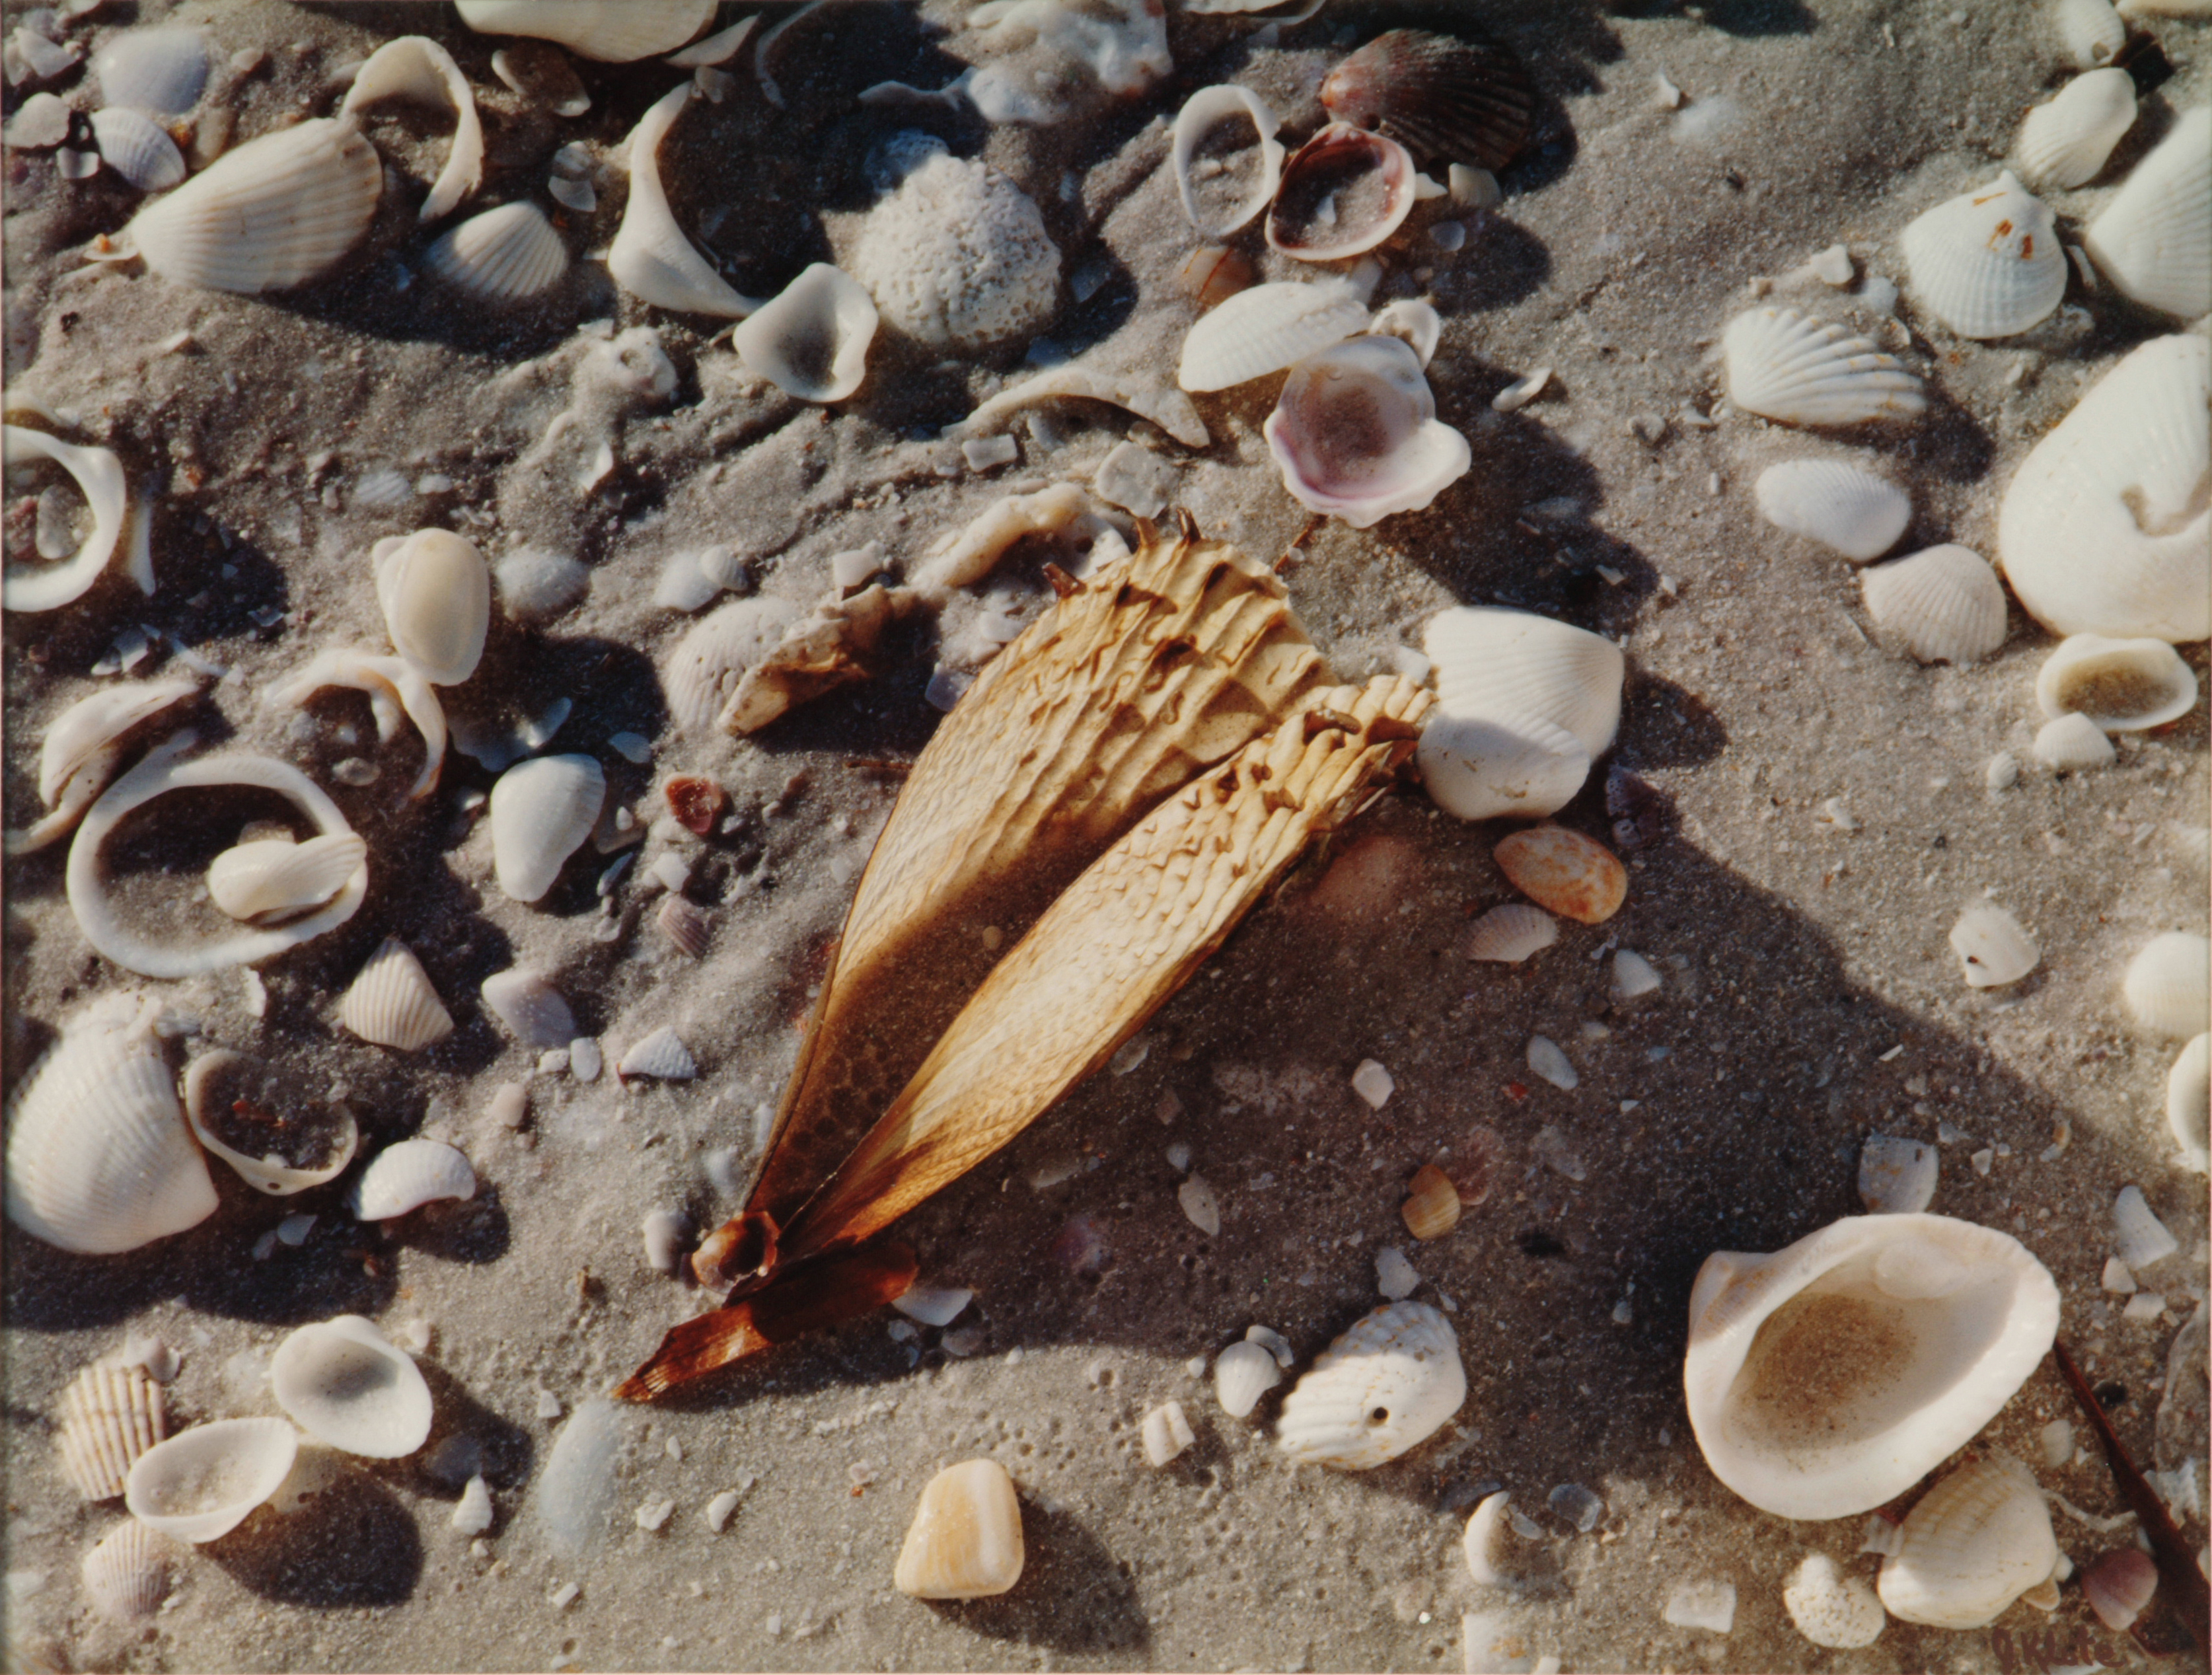 Sea shells and pen shell